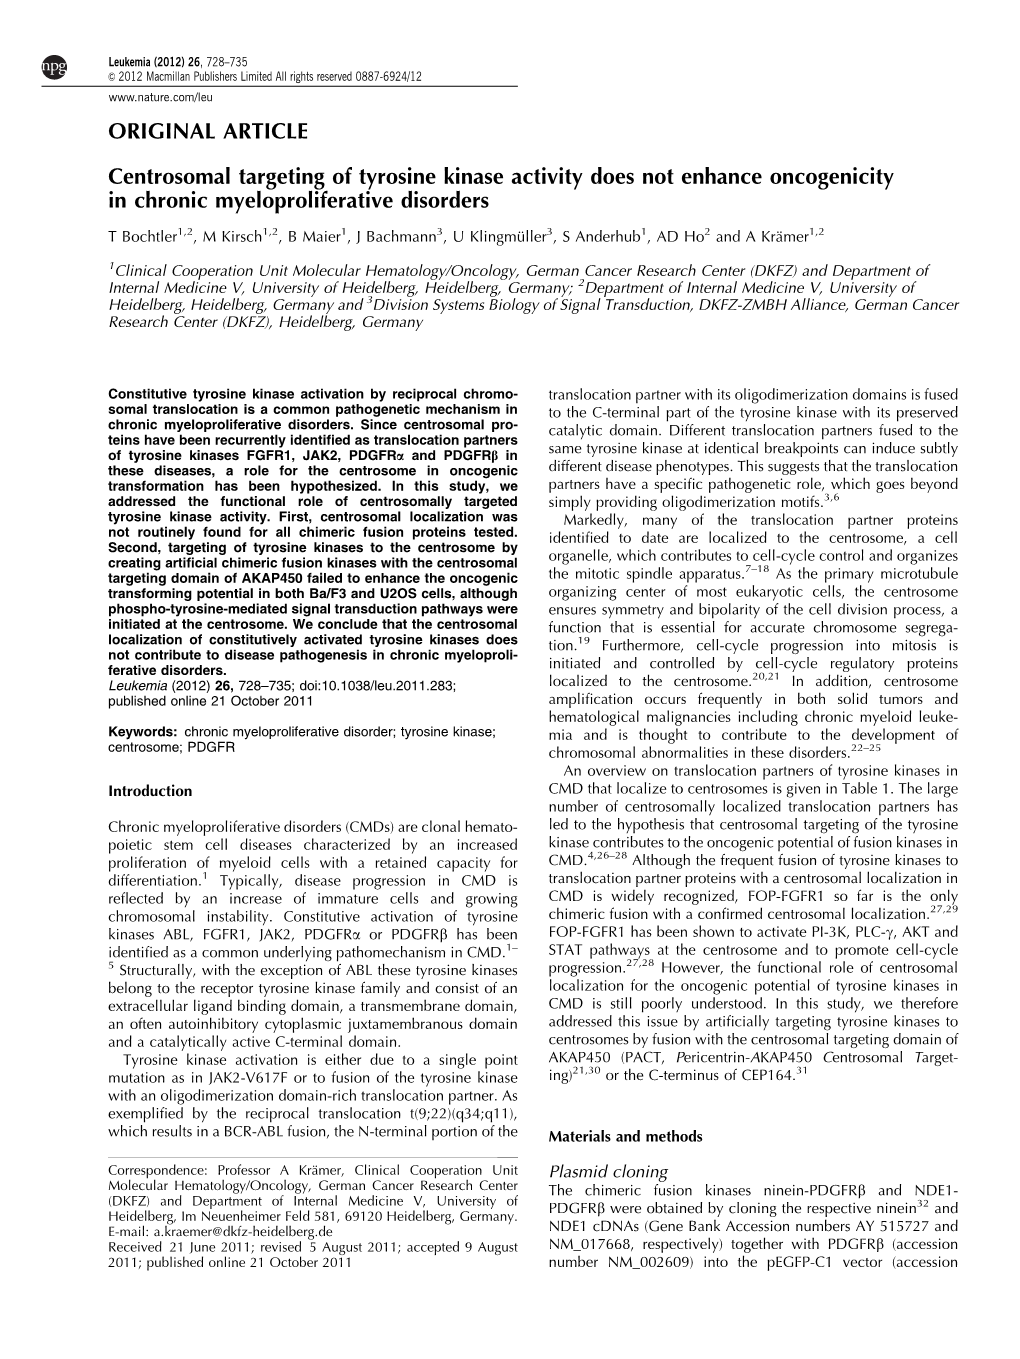 Centrosomal Targeting of Tyrosine Kinase Activity Does Not Enhance Oncogenicity in Chronic Myeloproliferative Disorders